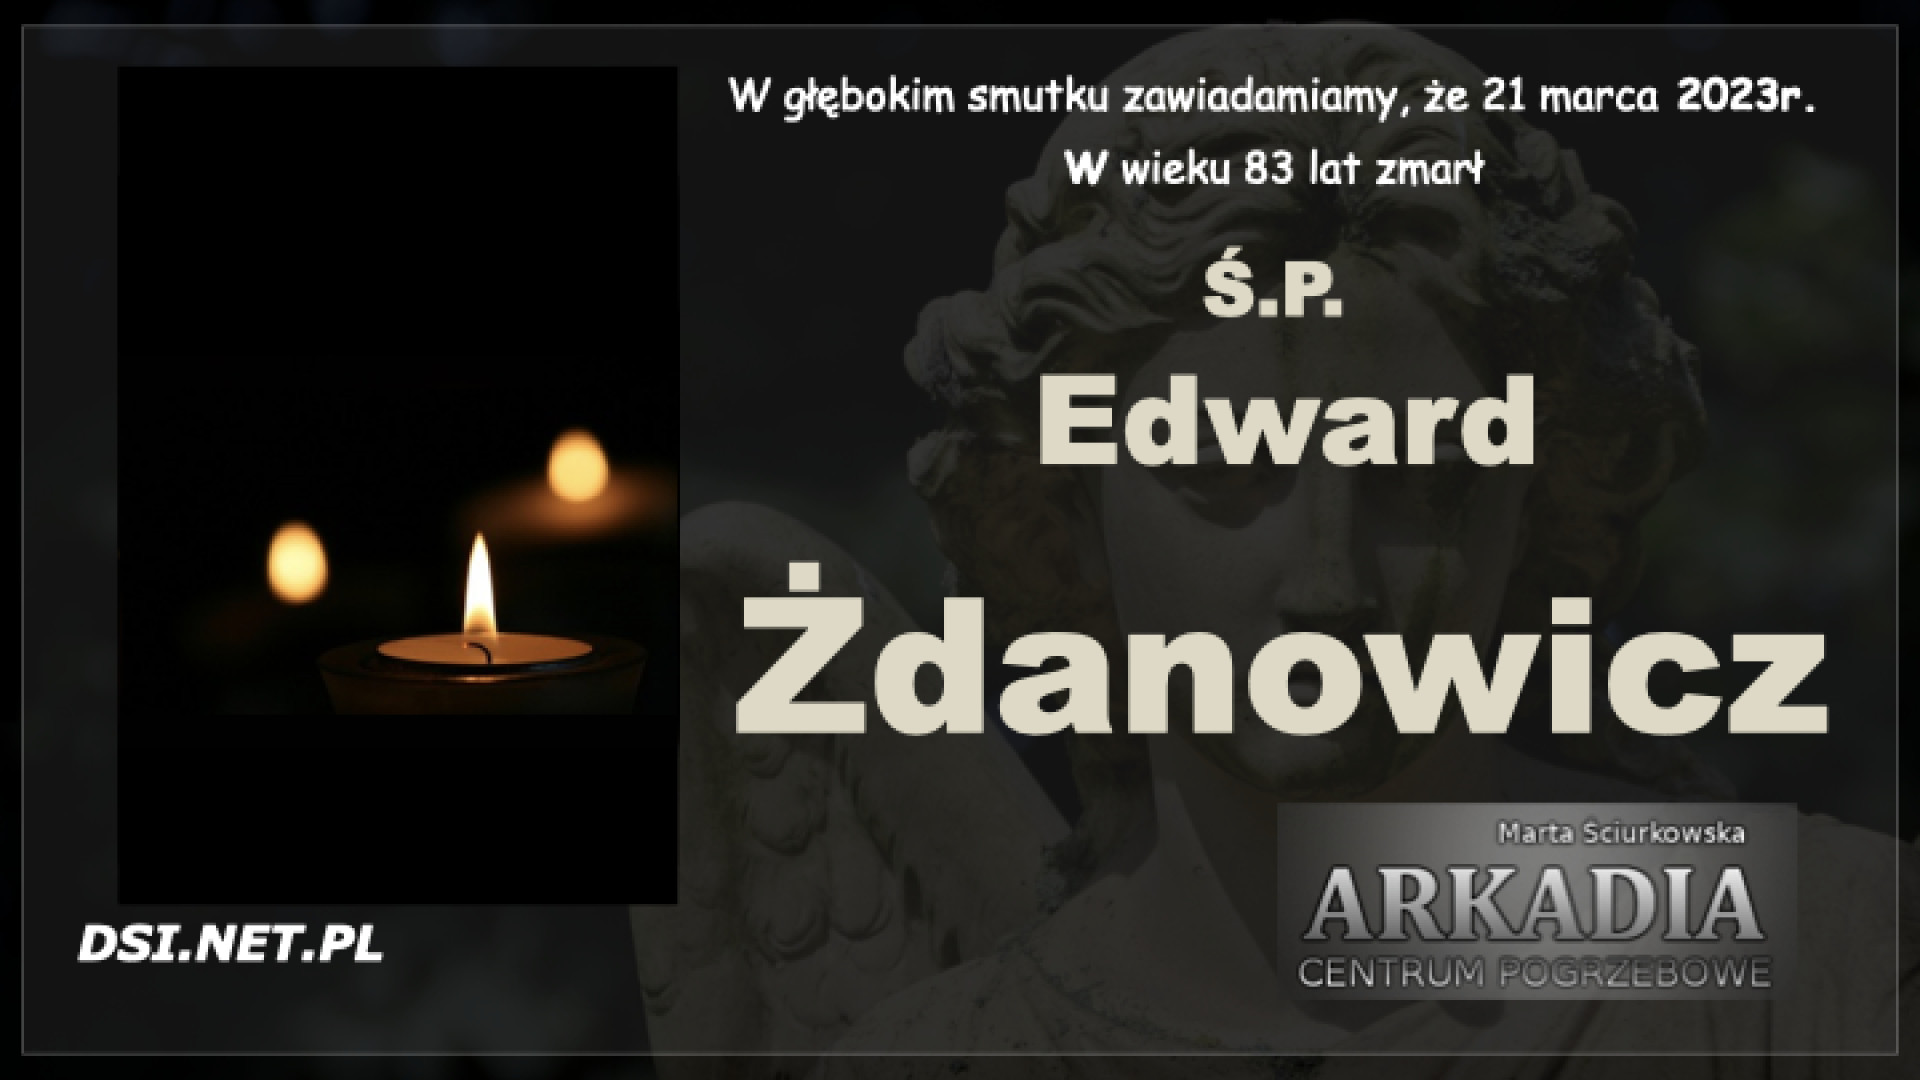 Ś.P. Edward Żdanowicz